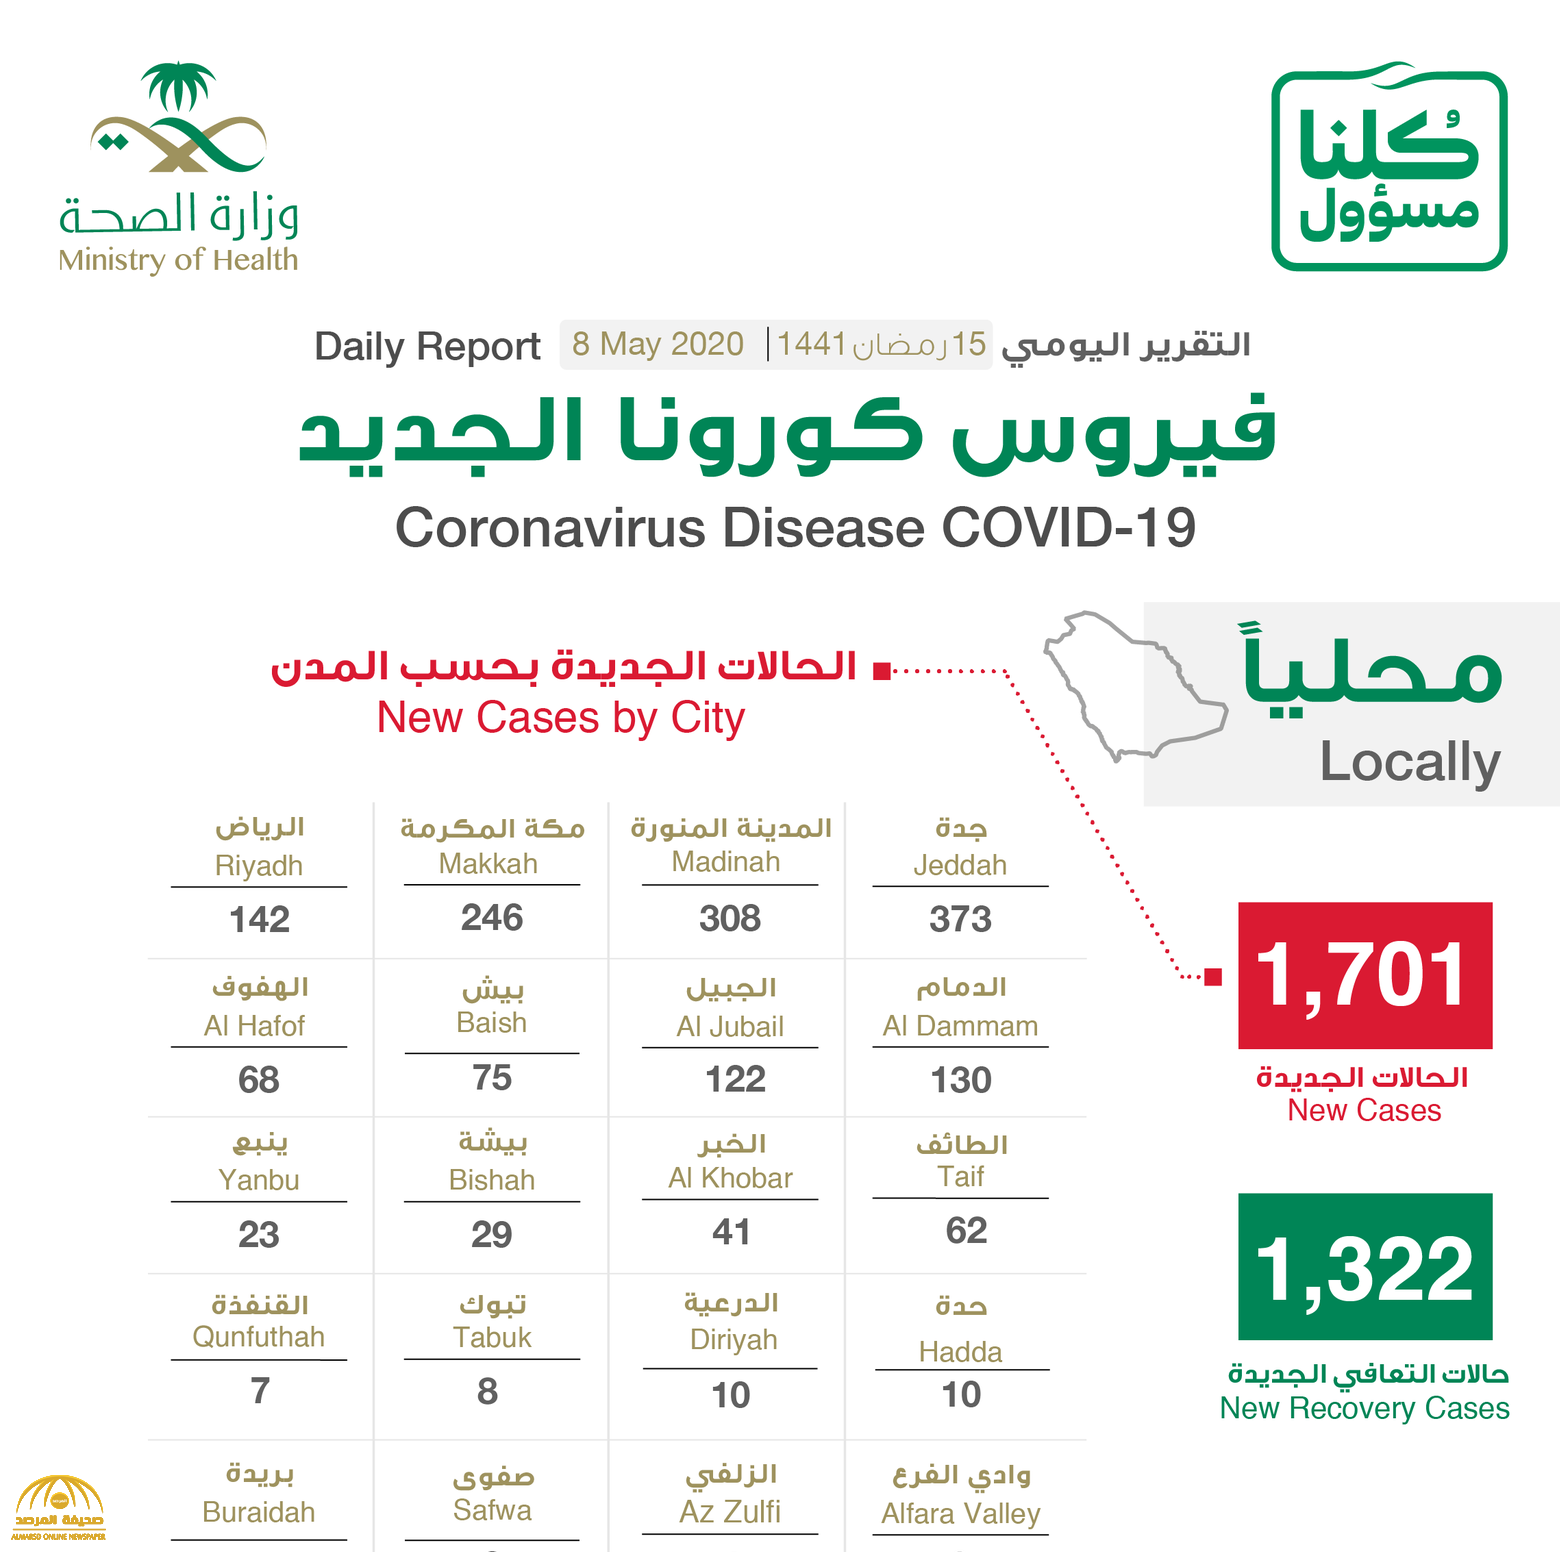 شاهد “إنفوجرافيك ” حول توزيع حالات الإصابة الجديدة بكورونا بحسب المناطق والمدن اليوم الجمعة